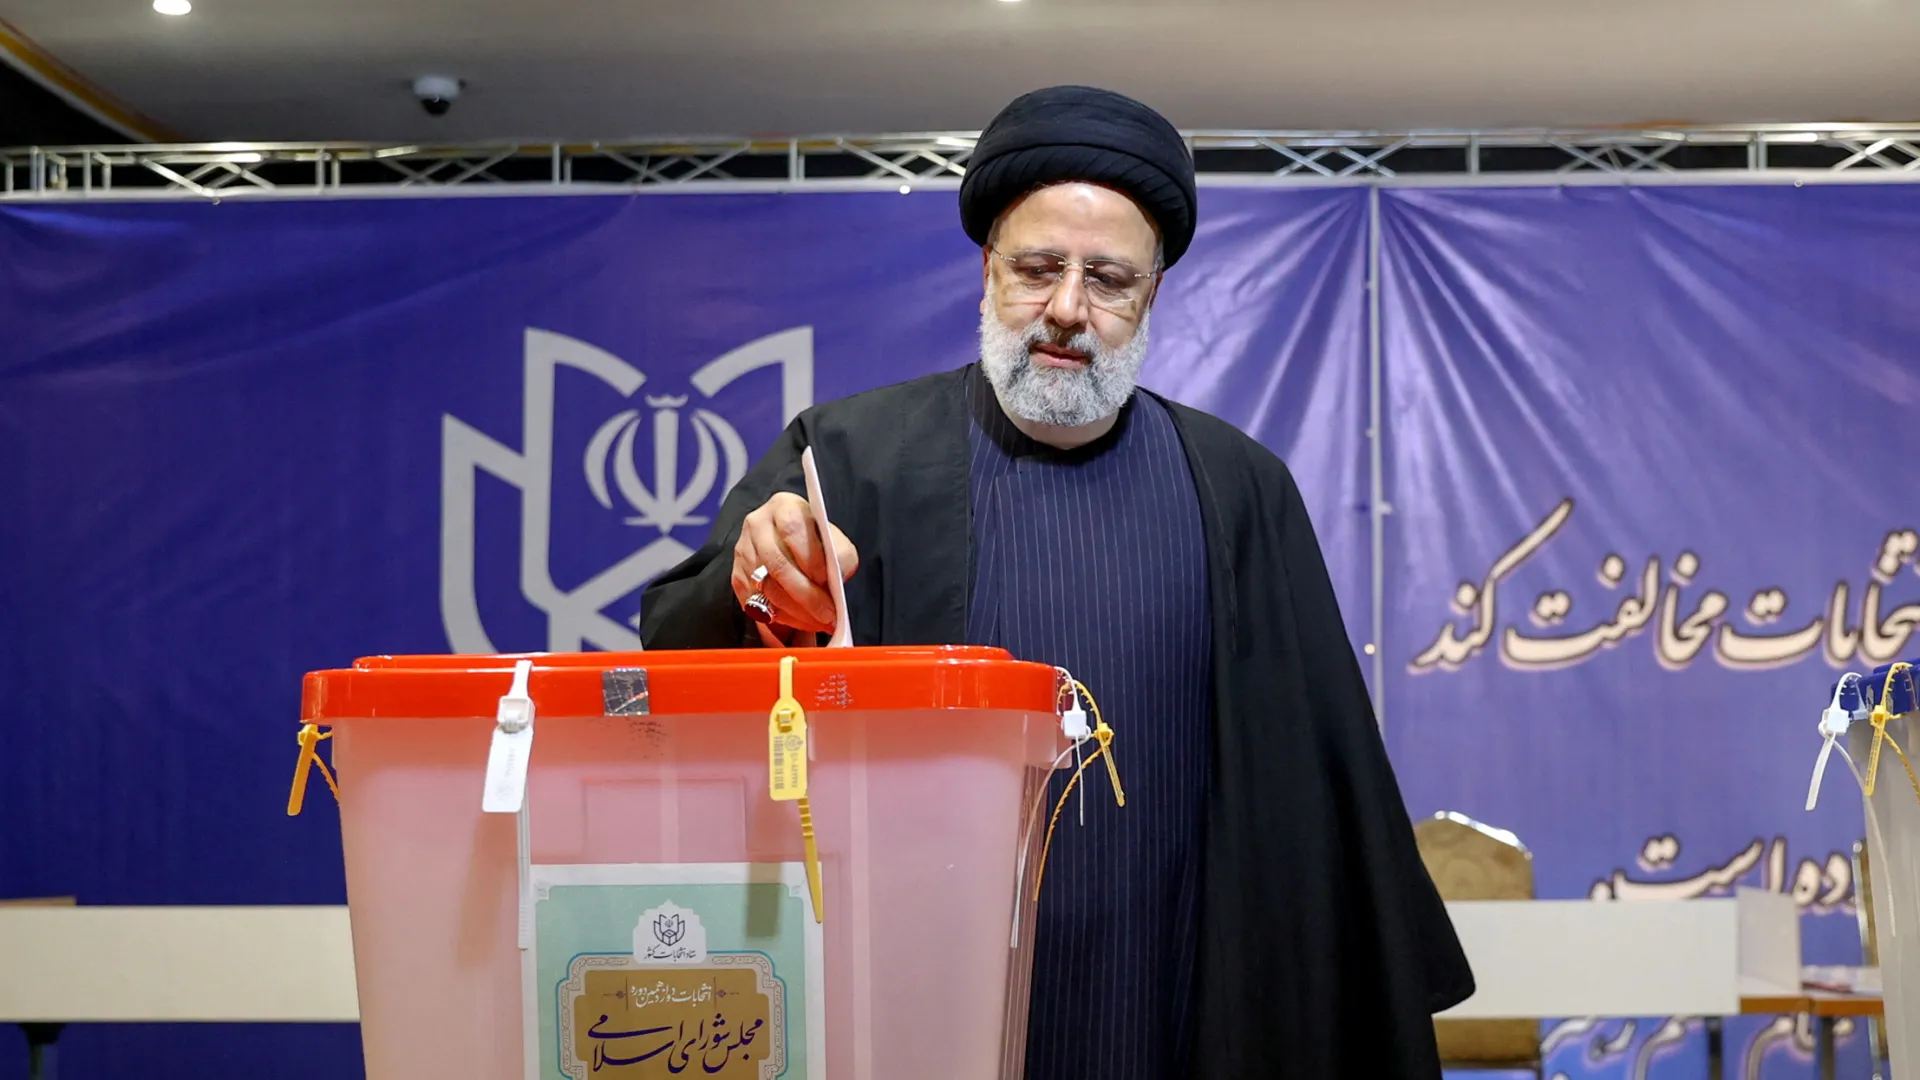 प्रारंभिक मतदान के बाद ईरान में संसद के लिए दूसरे दौर का मतदान